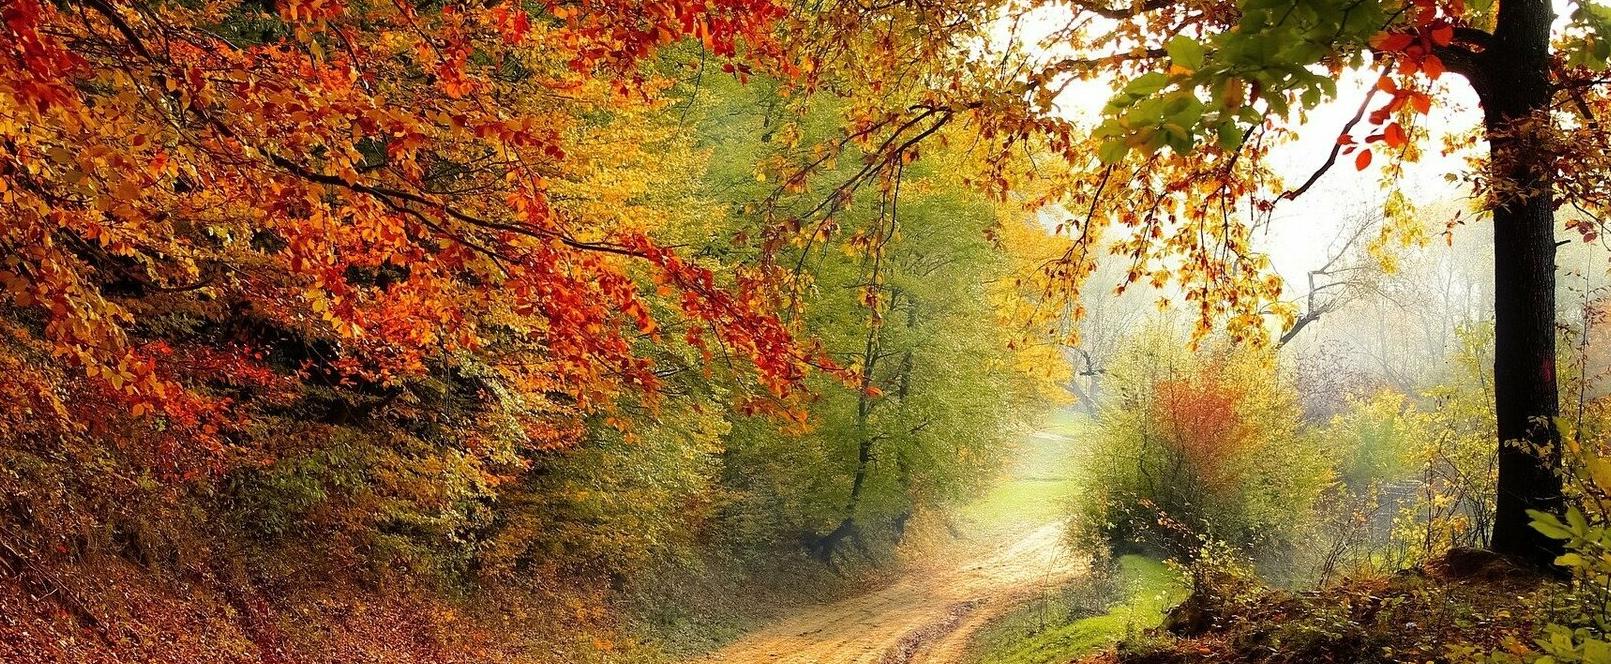 Die Reise in den olfaktorischen Herbst und Winter - Part 2